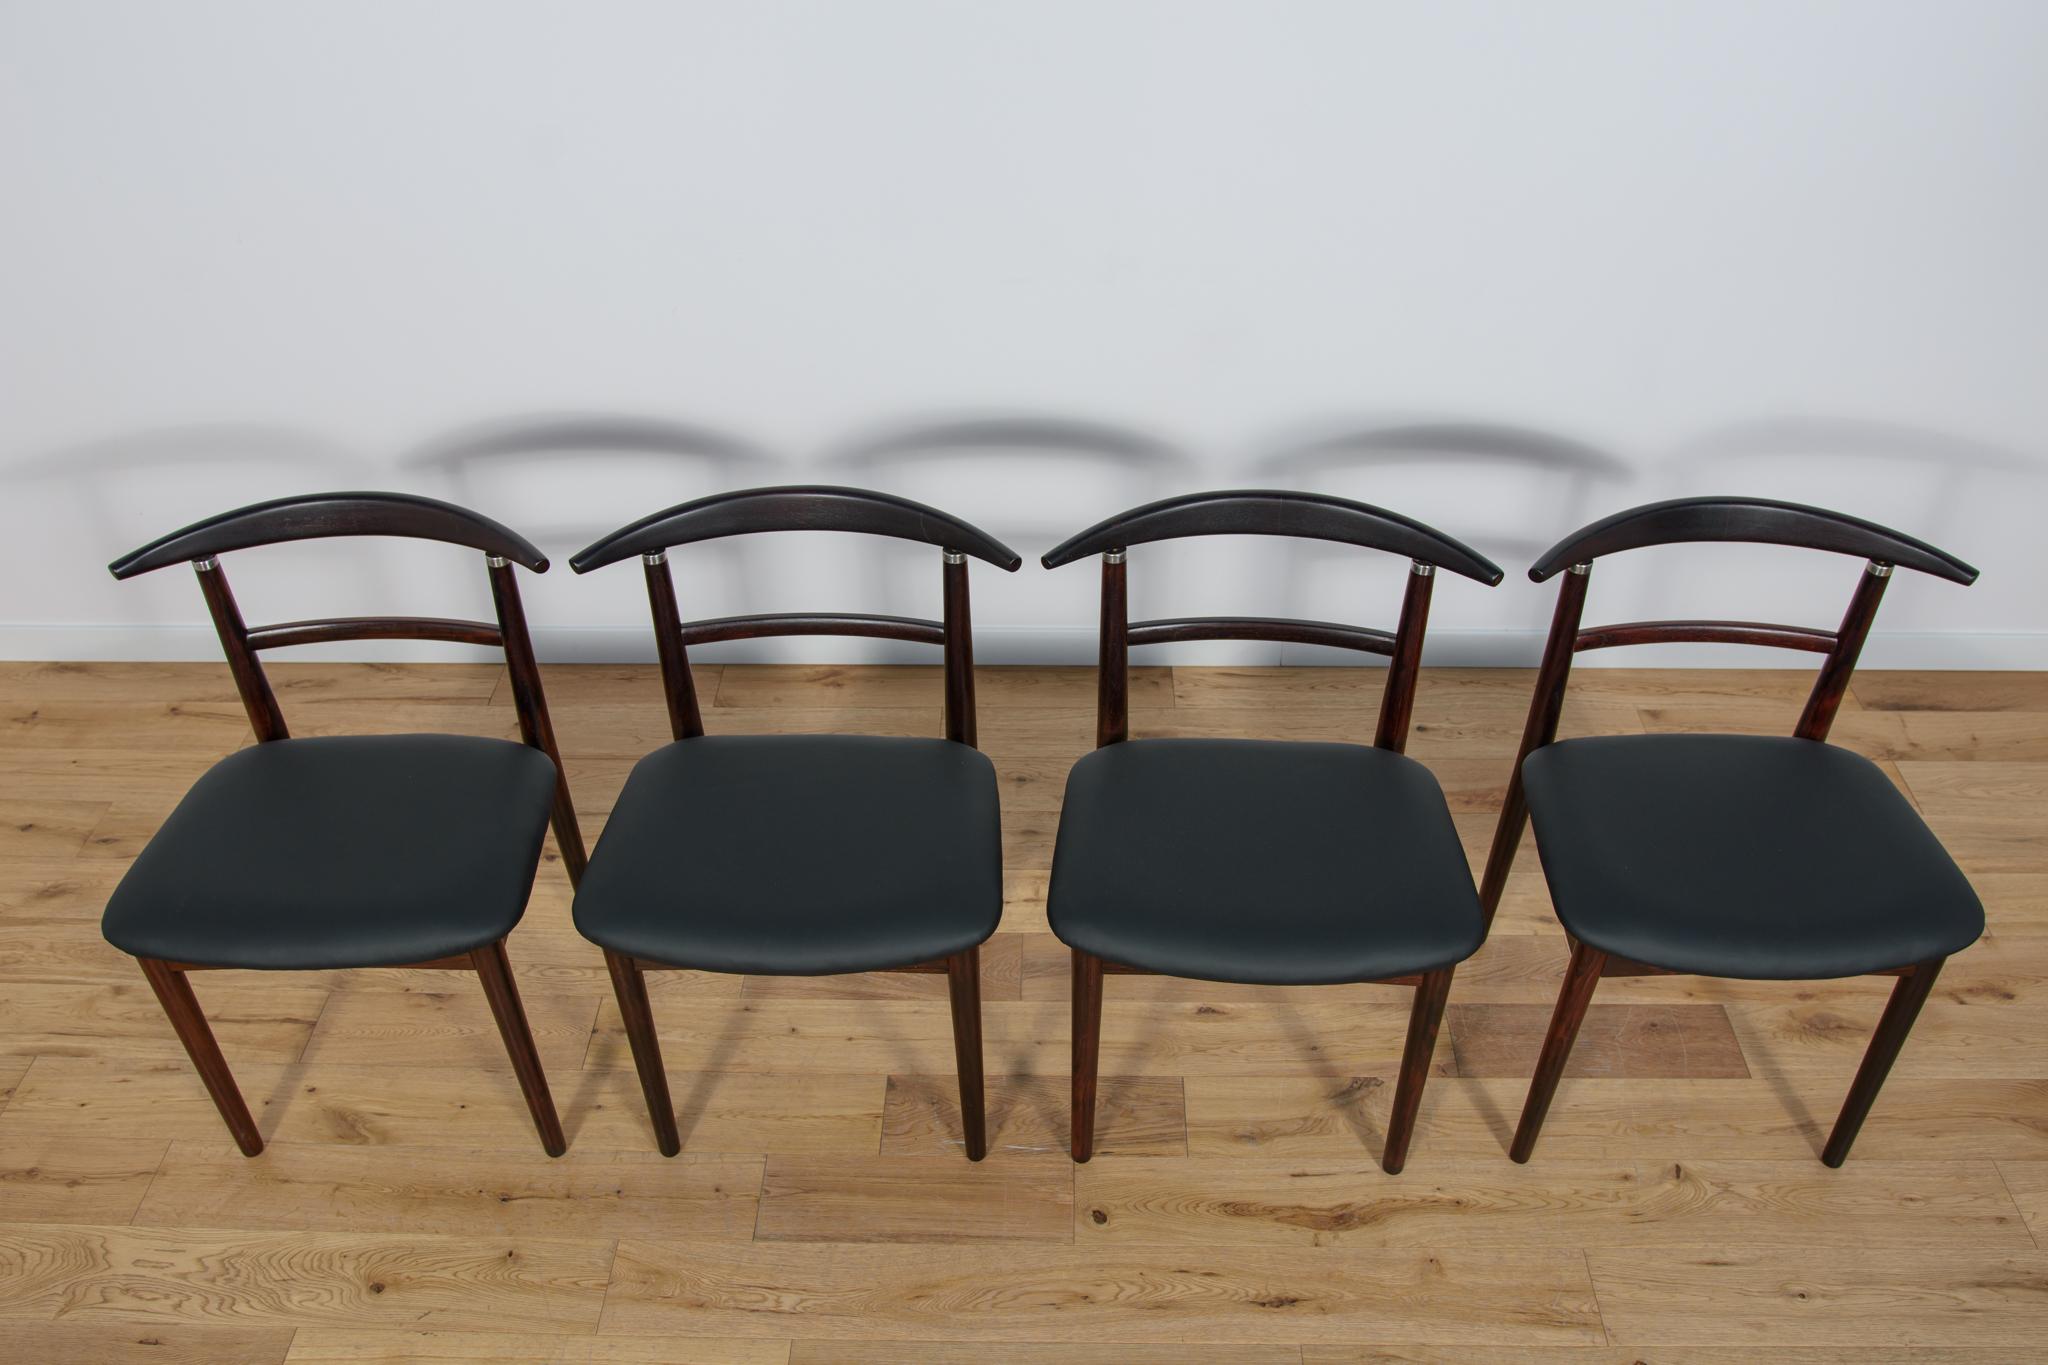 Un ensemble de quatre chaises uniques conçues par Helge Sibast et Borg Rammerskov pour l'usine danoise Sibast dans les années 1960. Les chaises ont des dossiers ergonomiques sculptés de façon unique. Les chaises ont fait l'objet d'une rénovation